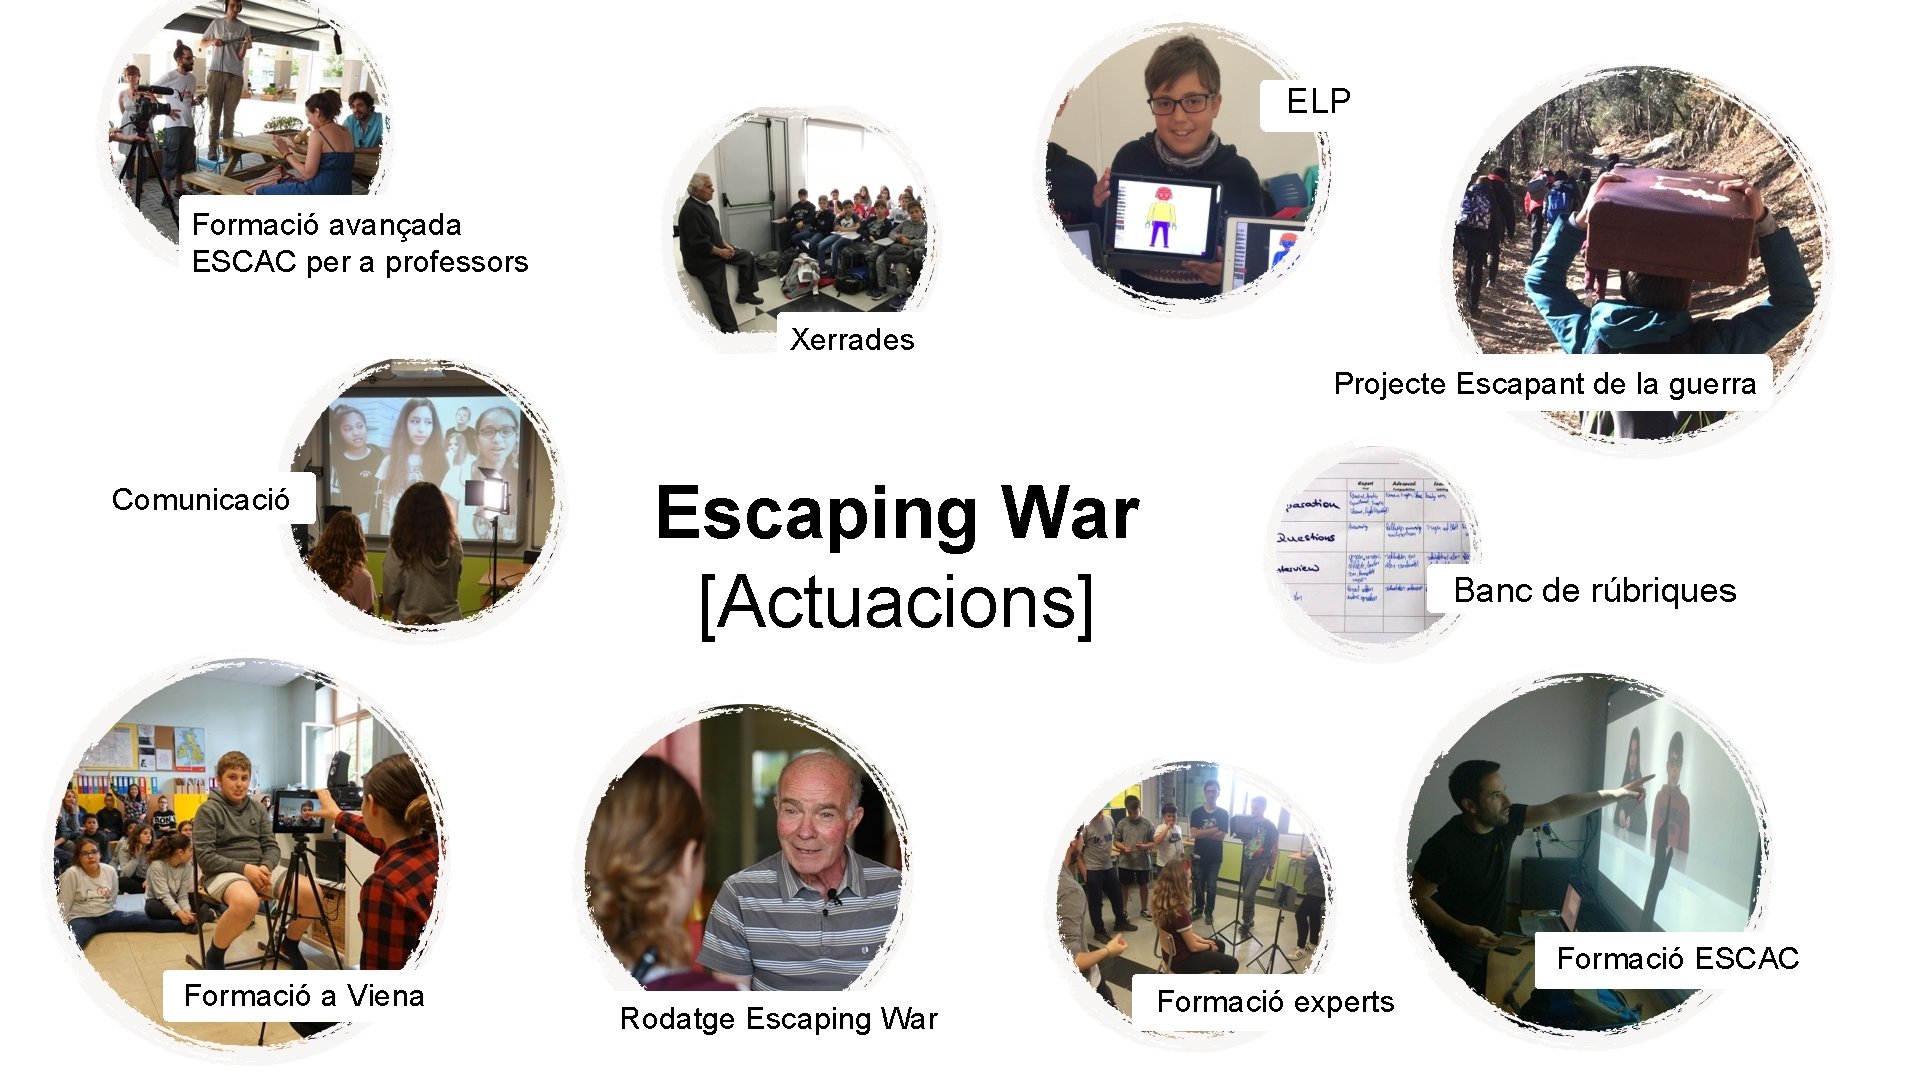 ELP Formació avançada ESCAC per a professors Xerrades Projecte Escapant de la guerra Comunicació